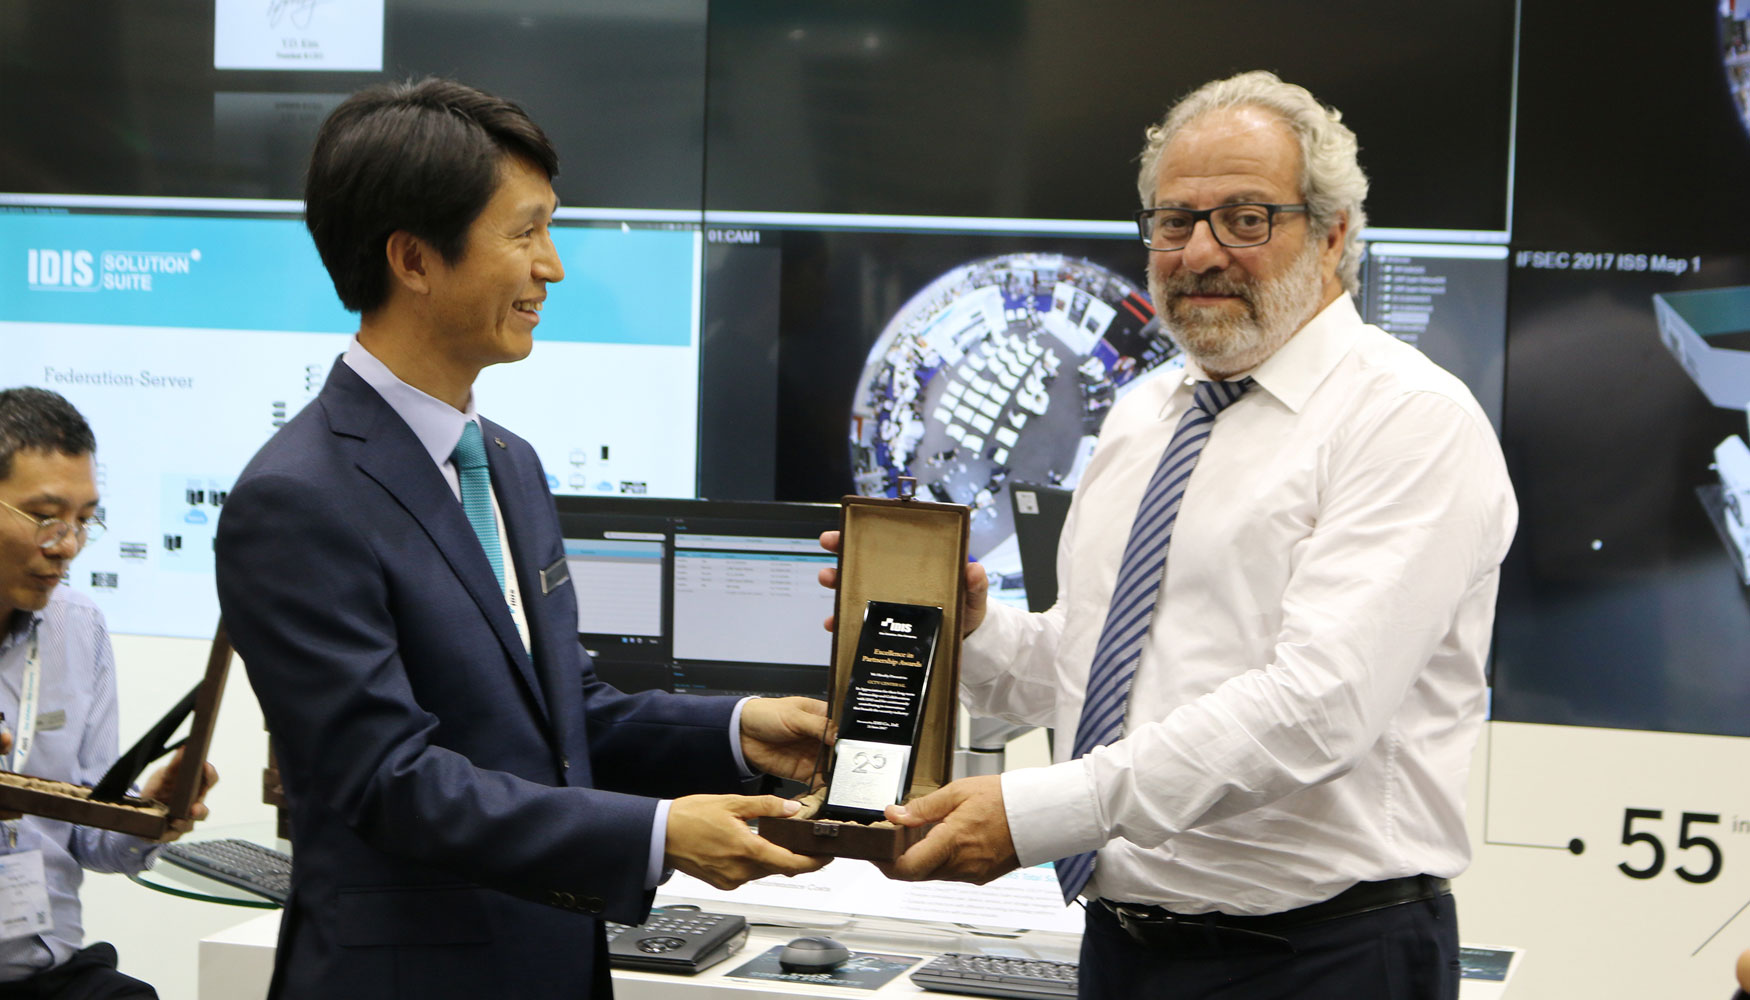 Alberto Bernab, CEO de CCTV Center, recibe el premio como distribuidor de las soluciones IDIS, de manos de Dr...